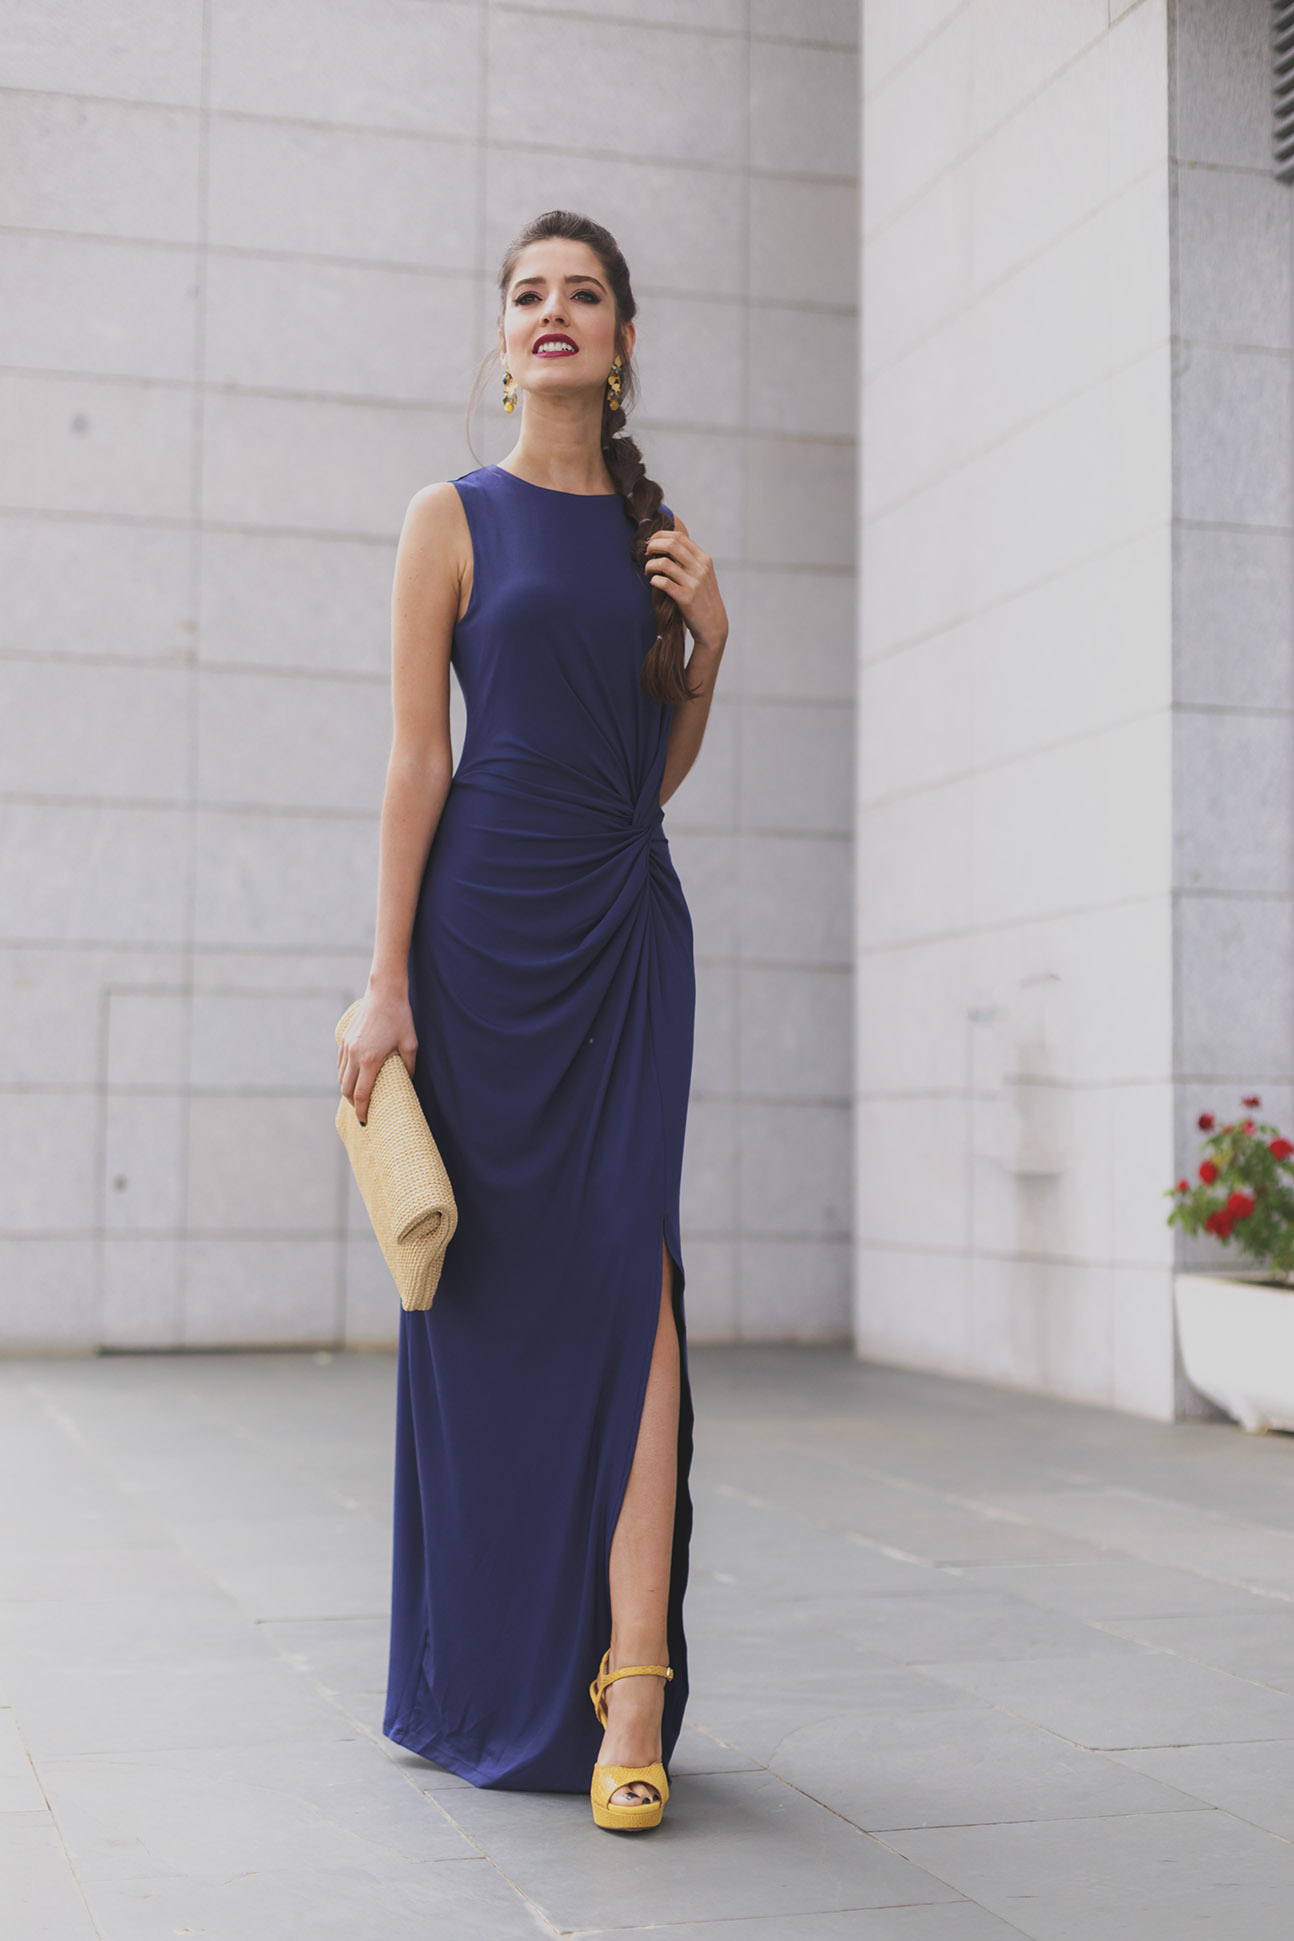 Look invitada de tarde: vestido azul noche | Invitada Perfecta